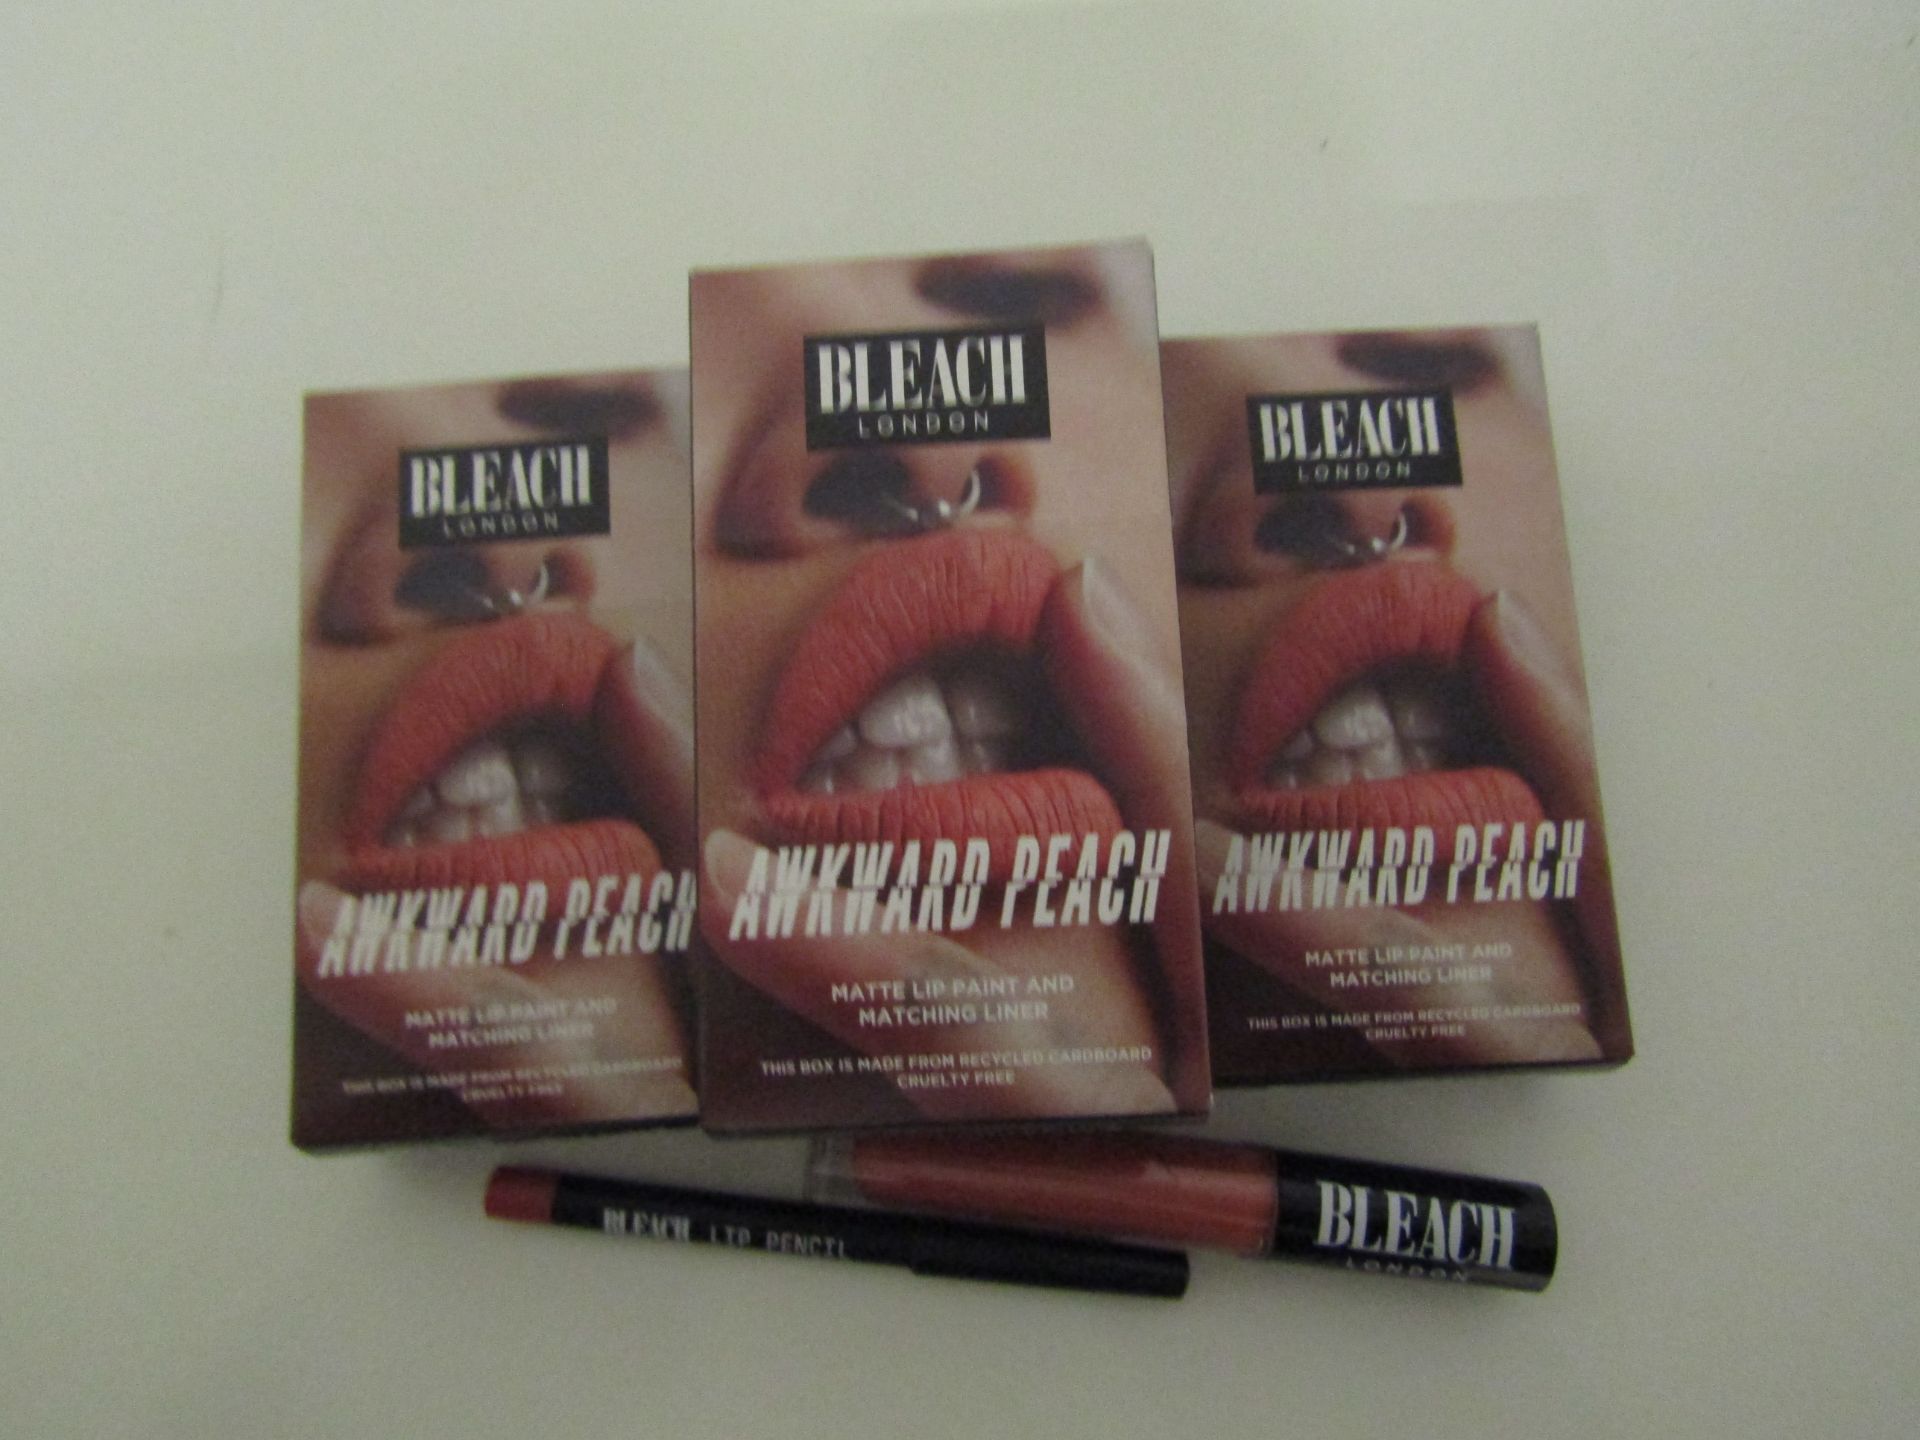 4 X Bleach London Awkward Peach Lip & Matching Liner new & Boxed